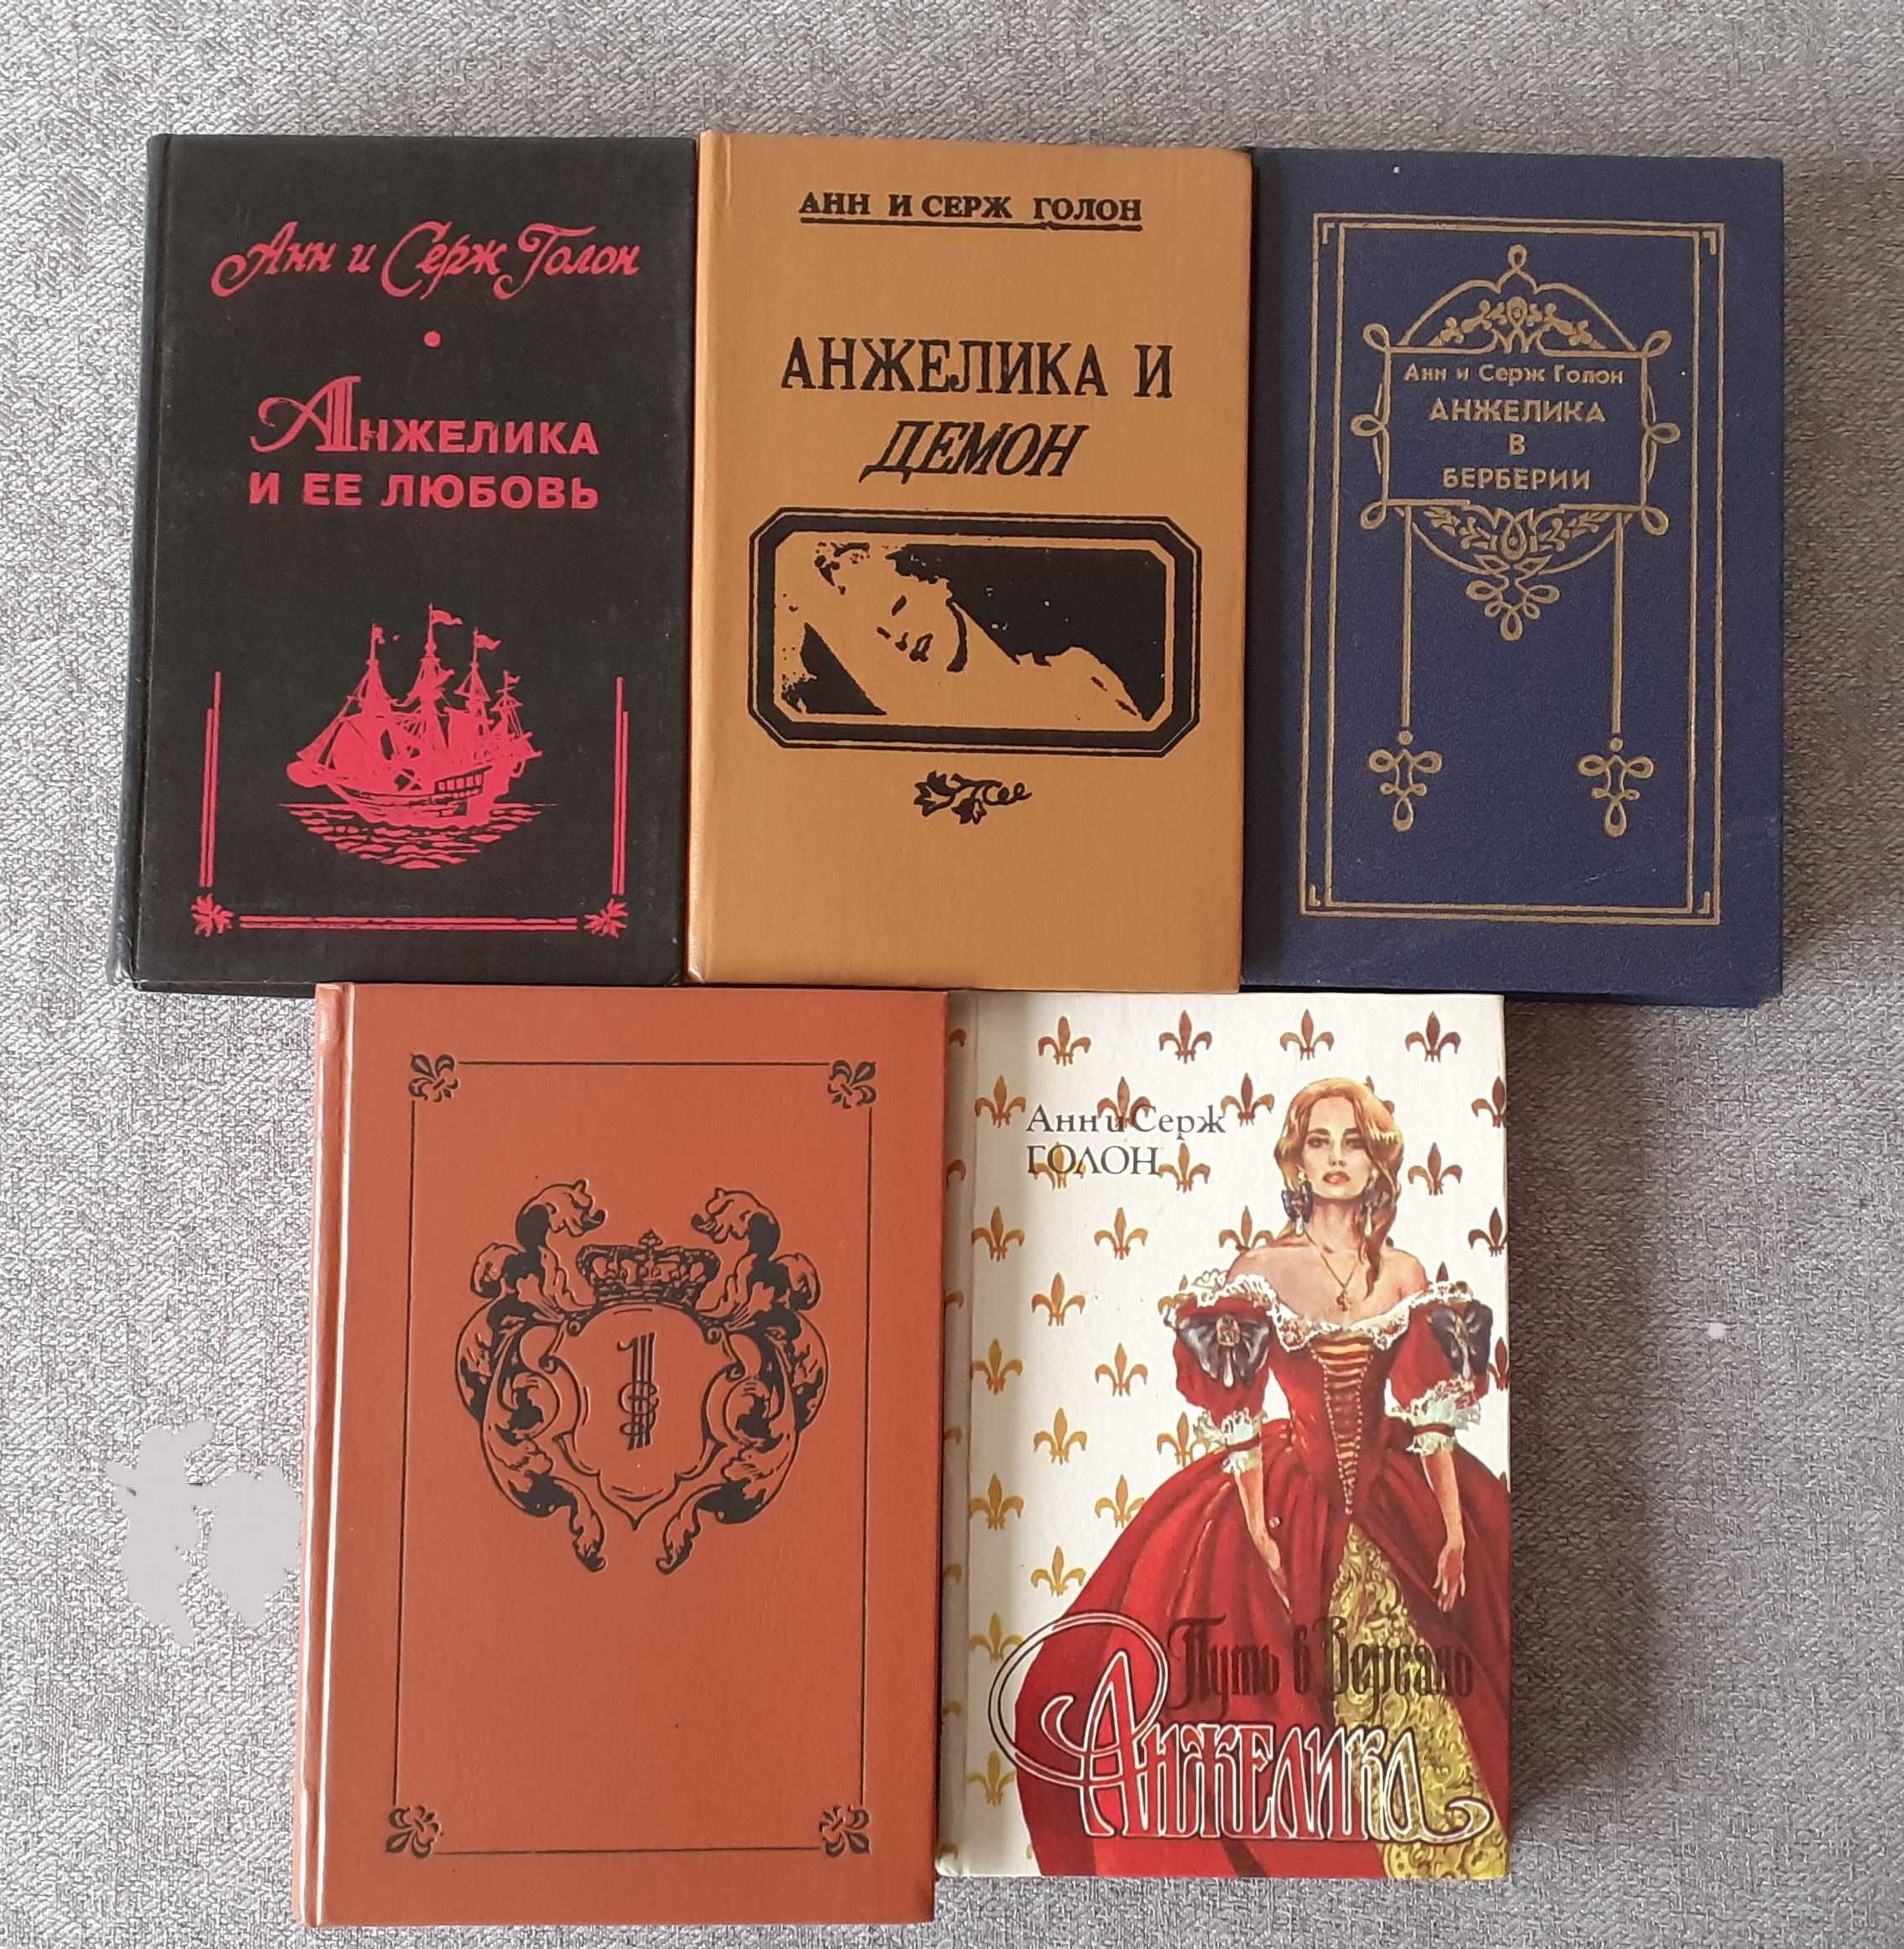 Книжки А. и С. Голон "Анжелика"